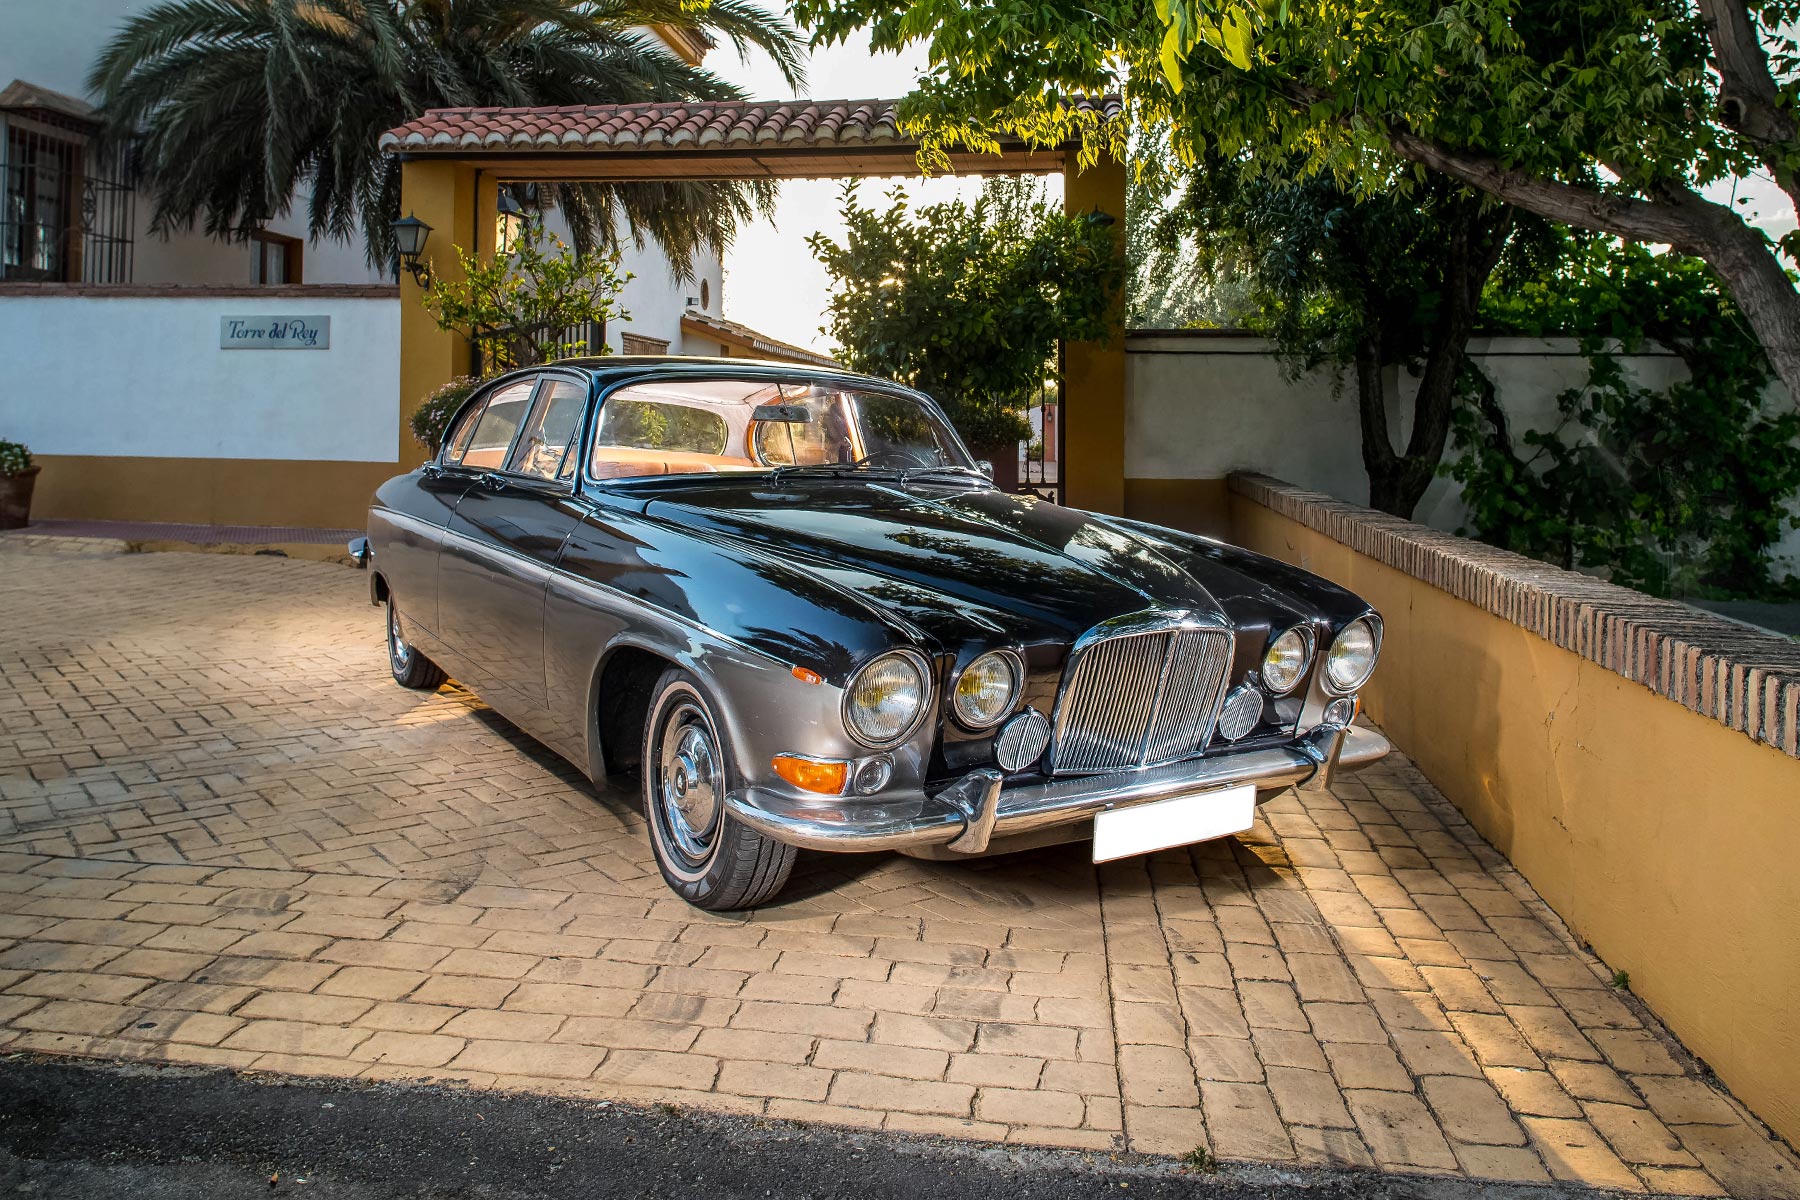 Bodas y Coches - Jaguar MK10 1961